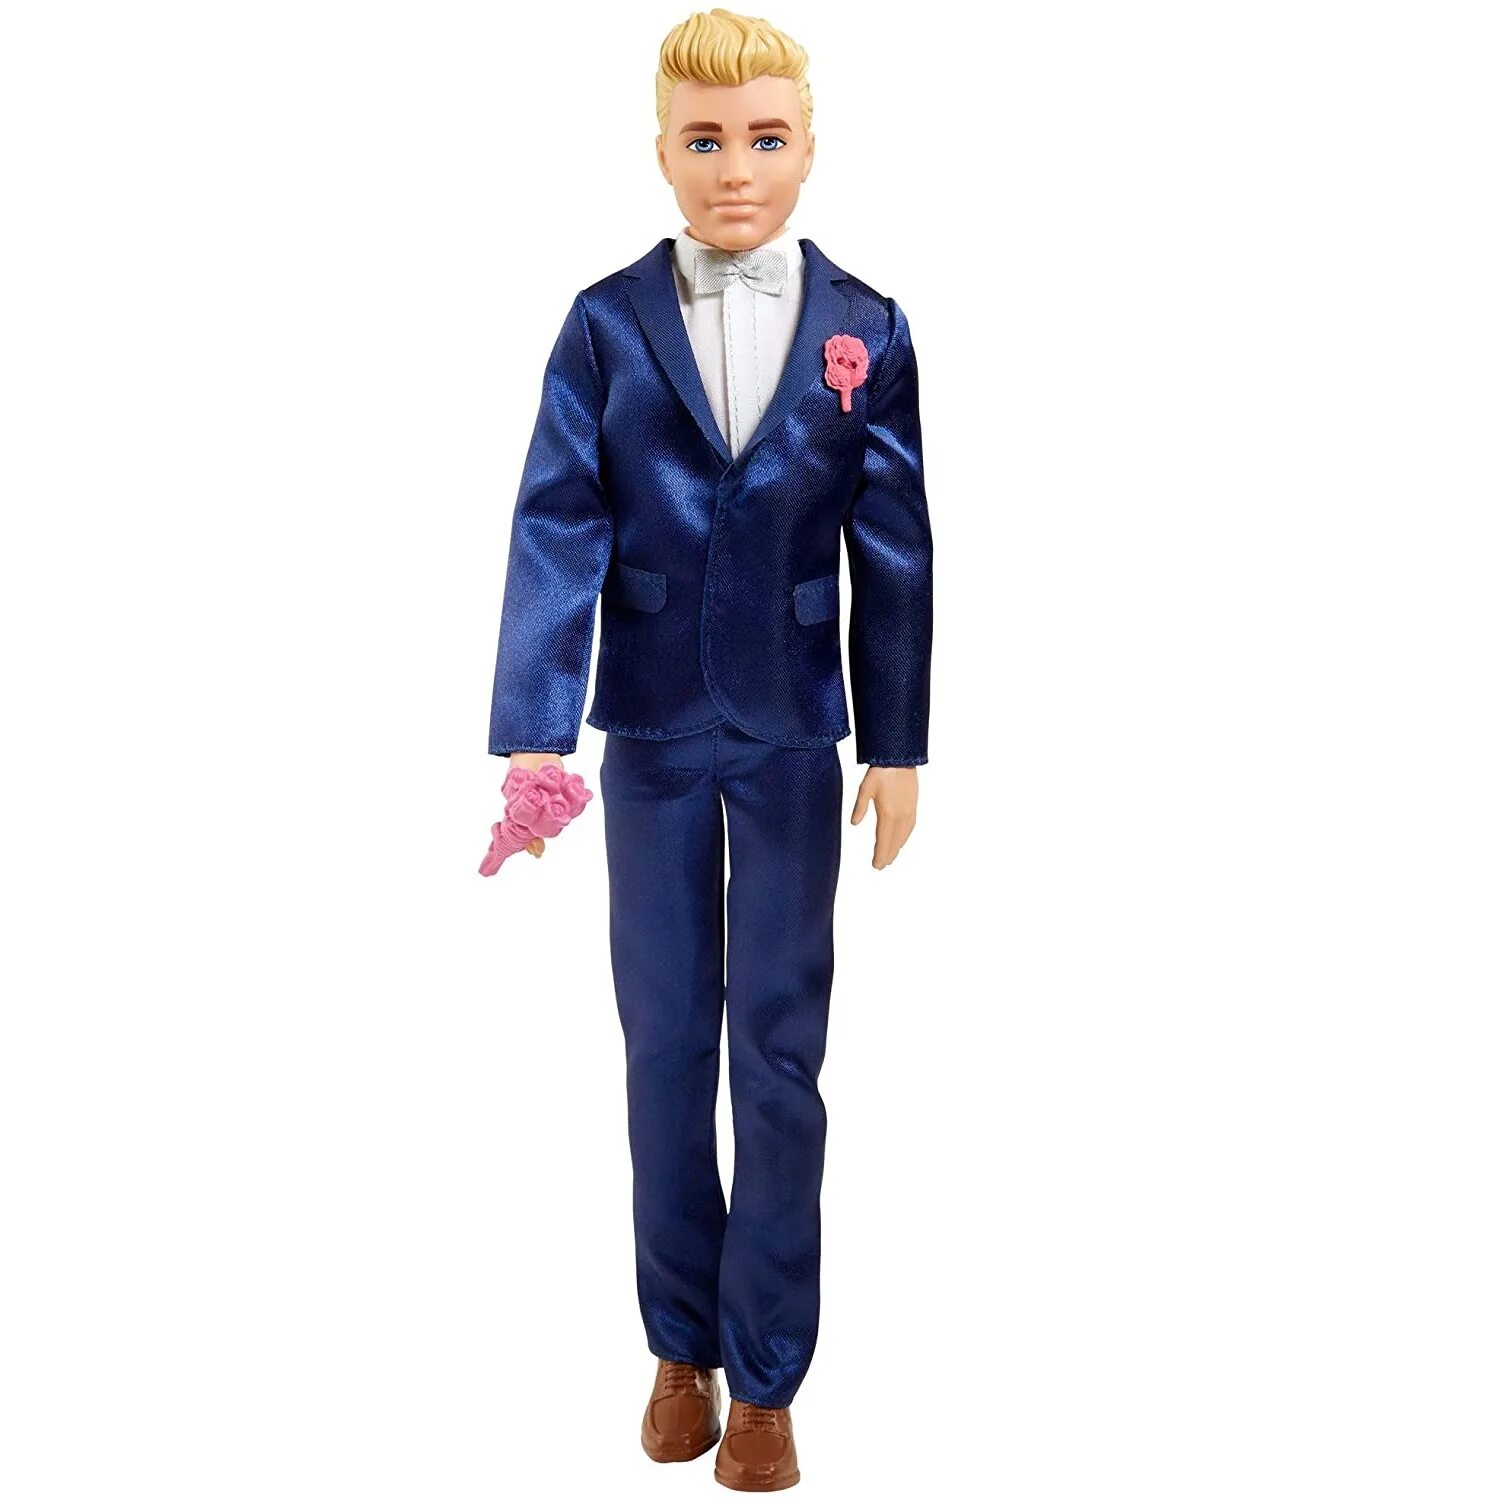 Кукла кен купить. Кукла Кен жених. Куклы Барби и Кен. Кукла Барби Кен жених. Barbie Кен жених gtf36.